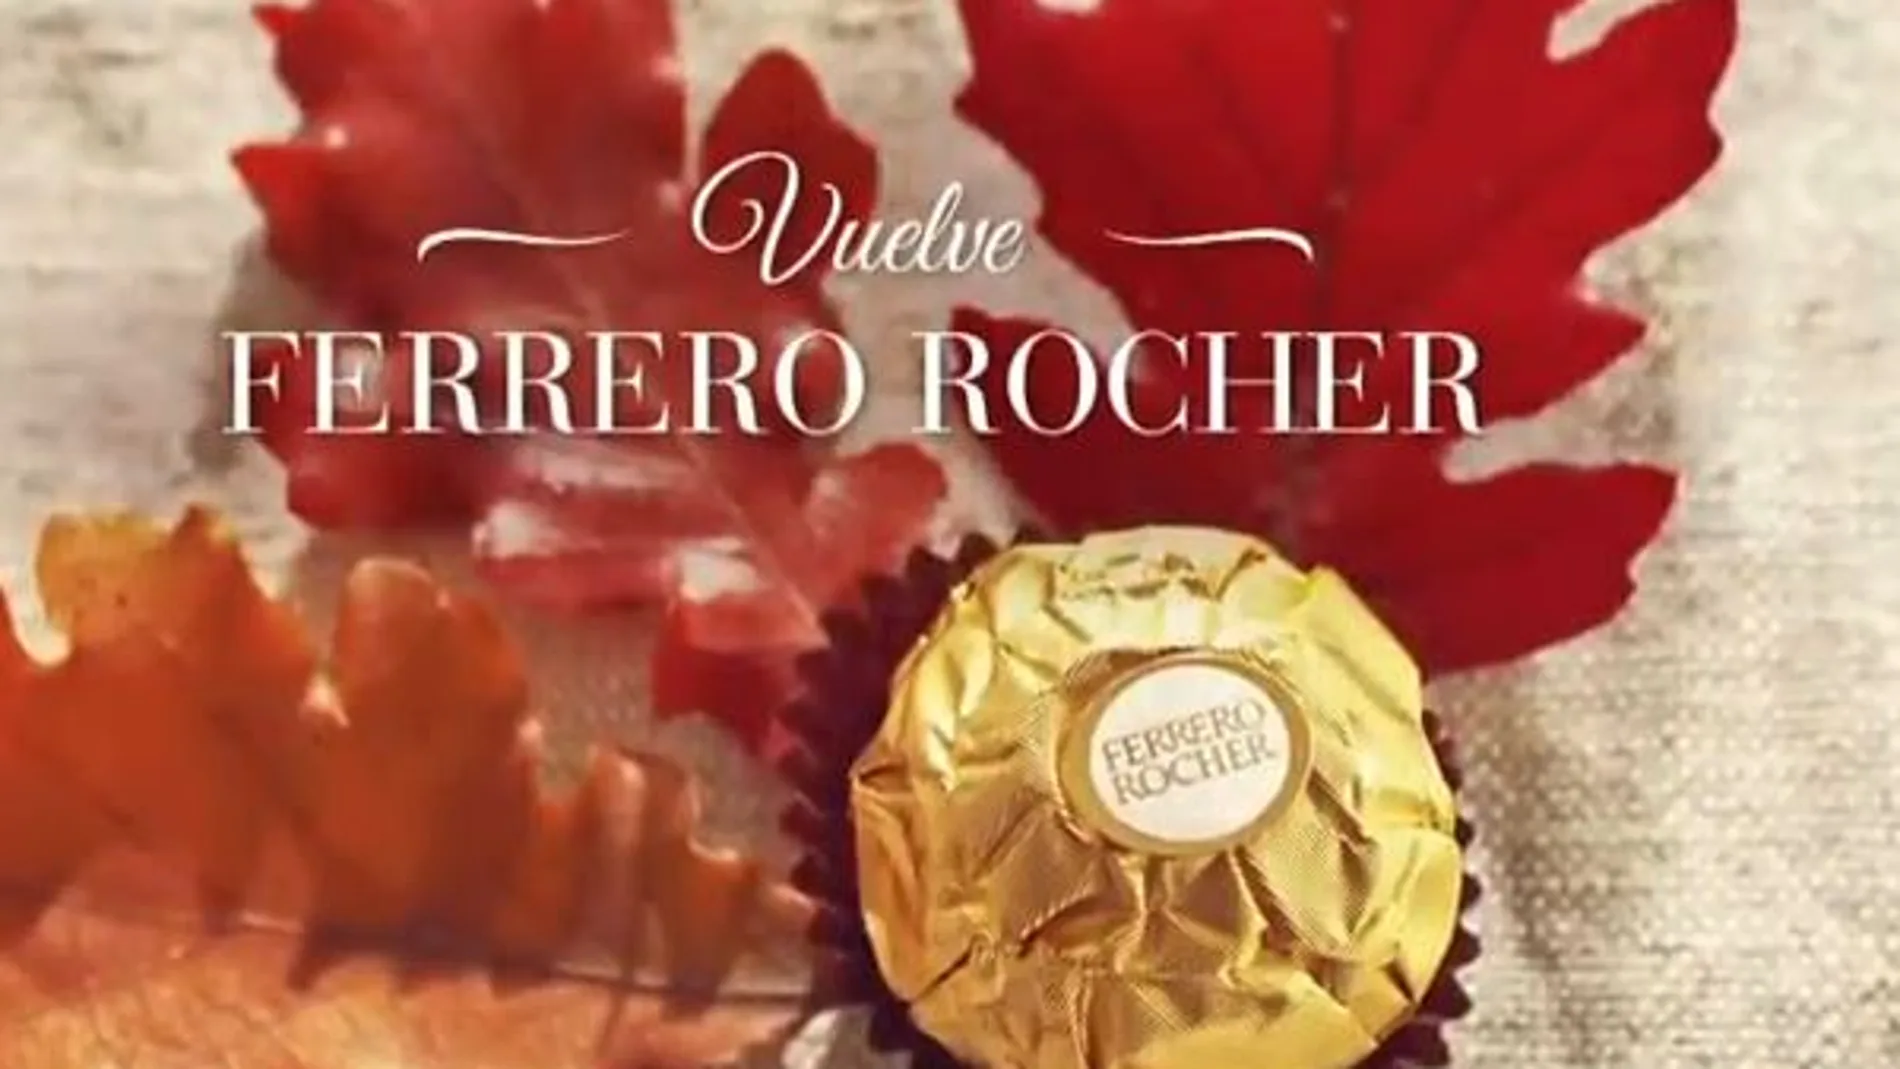 Ferrero Rocher vuelve de nuevo a los puntos de venta